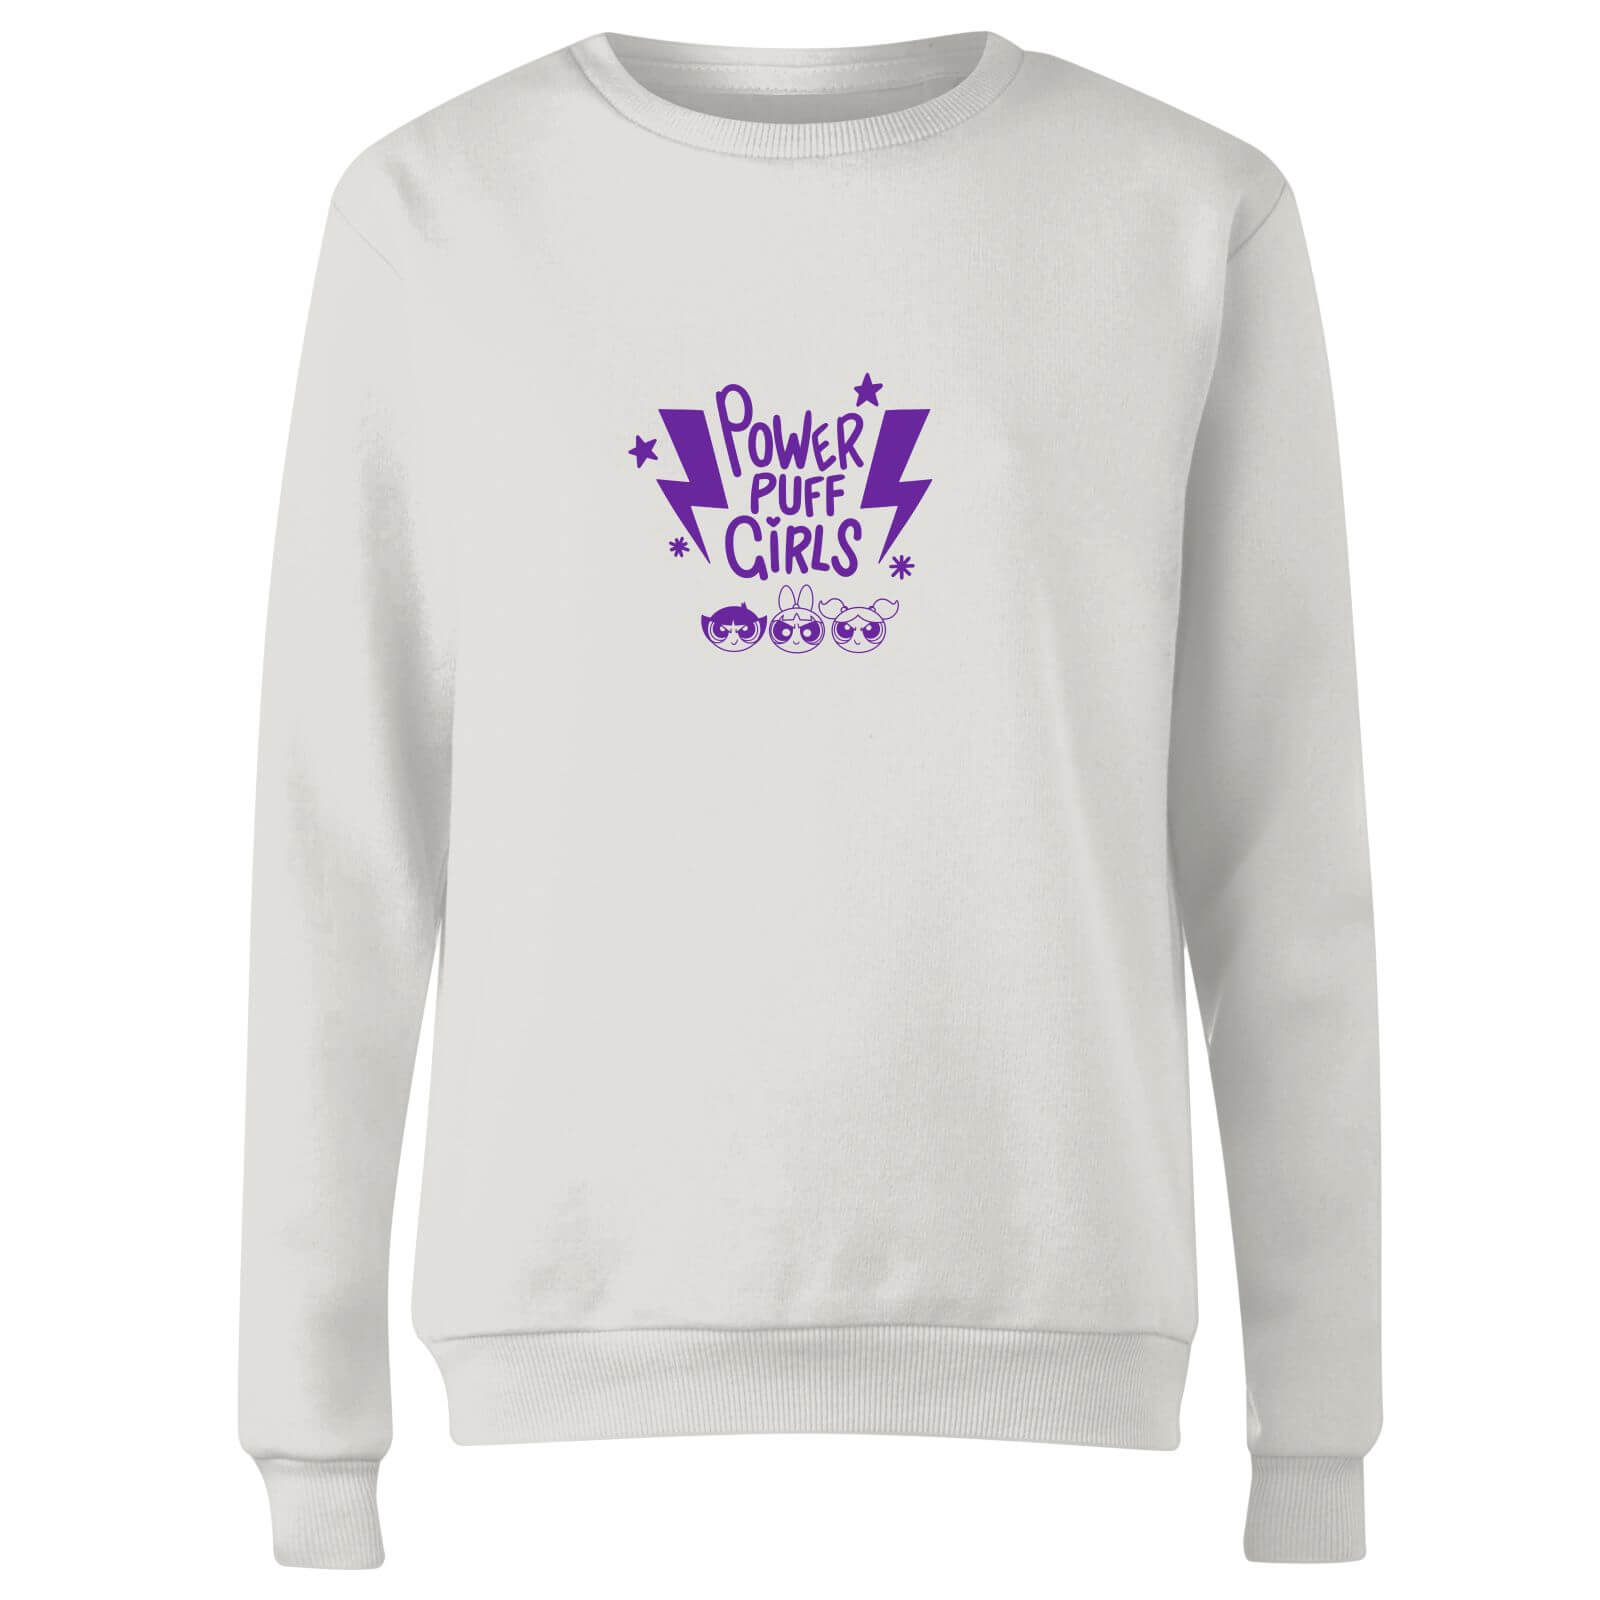 The Powerpuff Girls Thunderbolts Sweater Women's Sweatshirt - White - XS - White